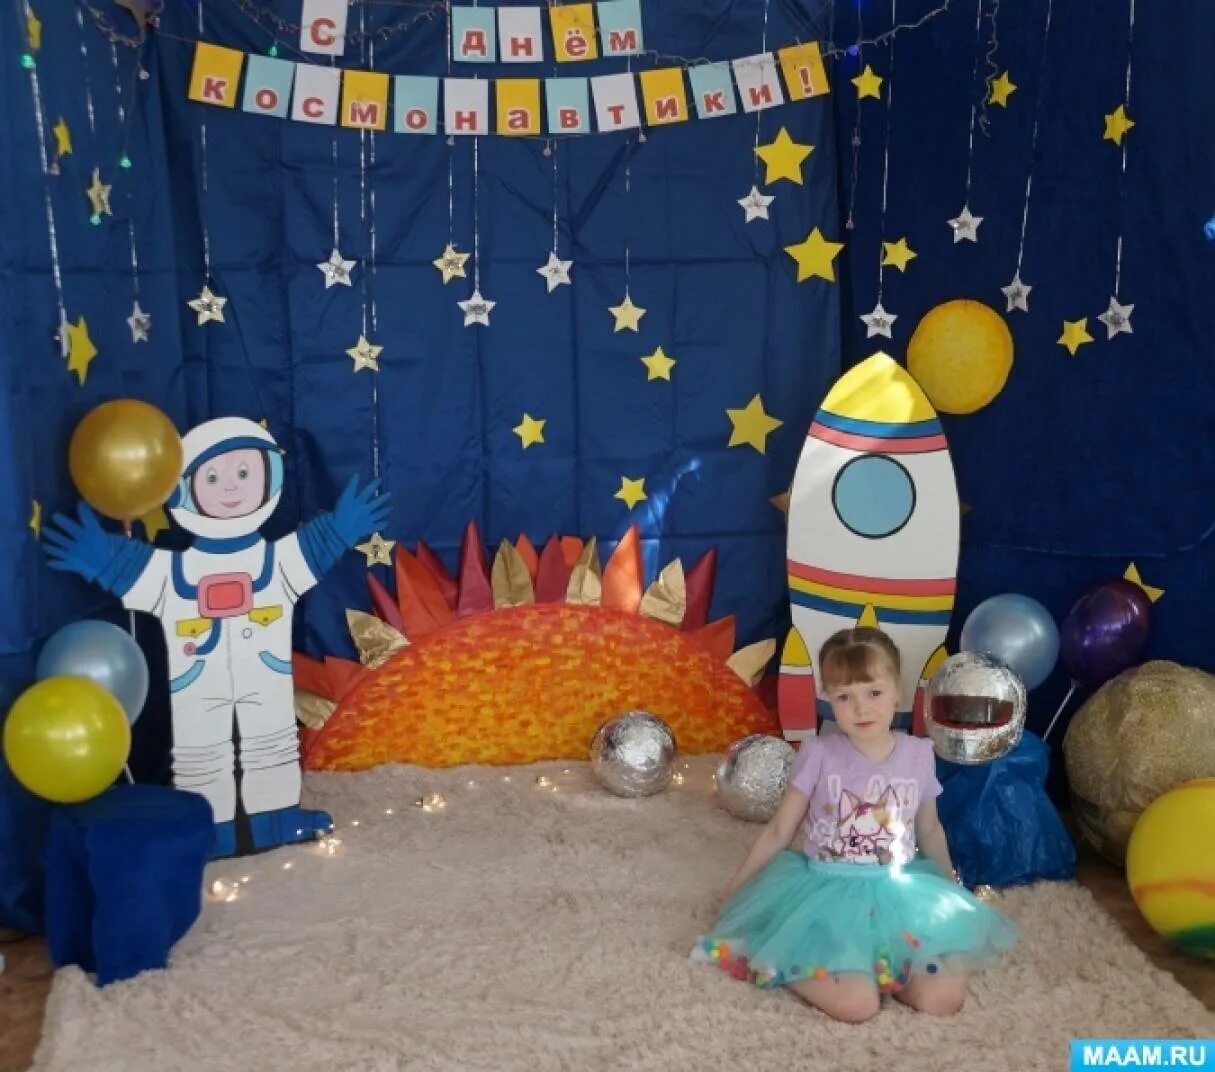 Фотозона на день космонавтики в детском. Фотозона космос в детском саду. Фото зона ко Дню космонавтики в детском саду. Фотозона на день космонавтики в детском саду. Оформление фотозоны космос в детском саду.